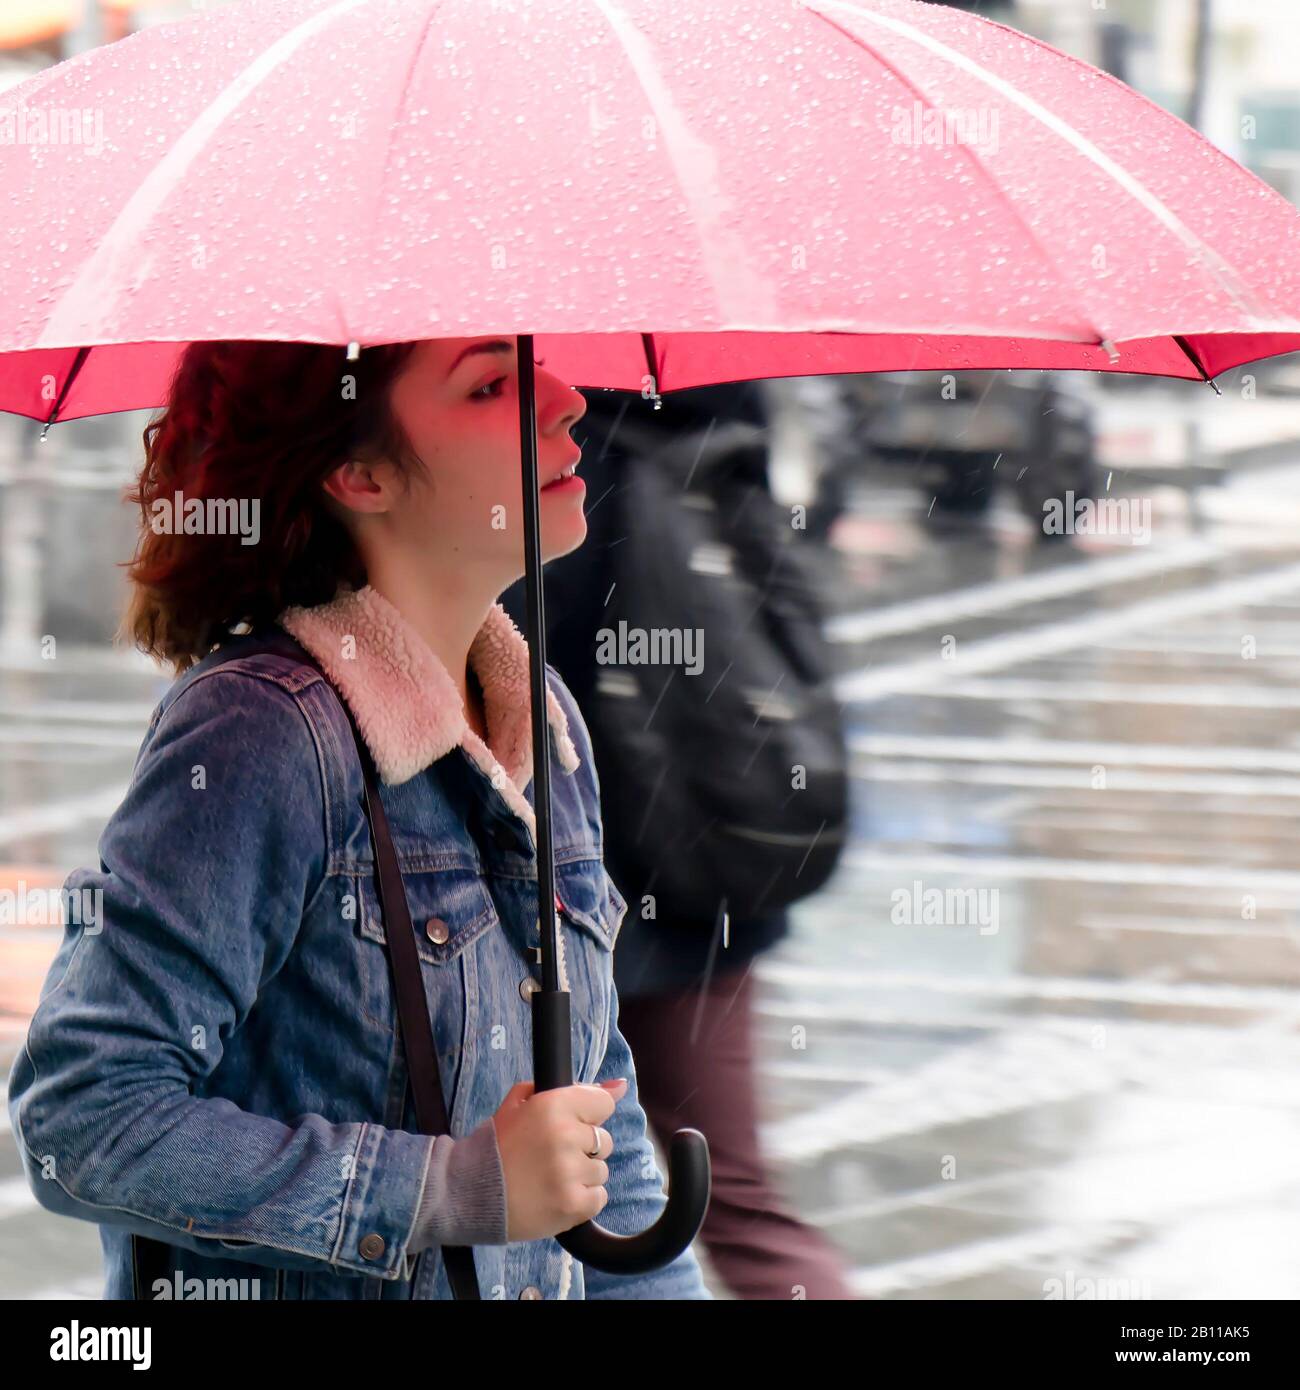 Belgrad, Serbien - 24. September 2019: Eine junge Frau in Denimjacke, die an einem regnerischen Tag unter rotem Schirm spaziert Stockfoto